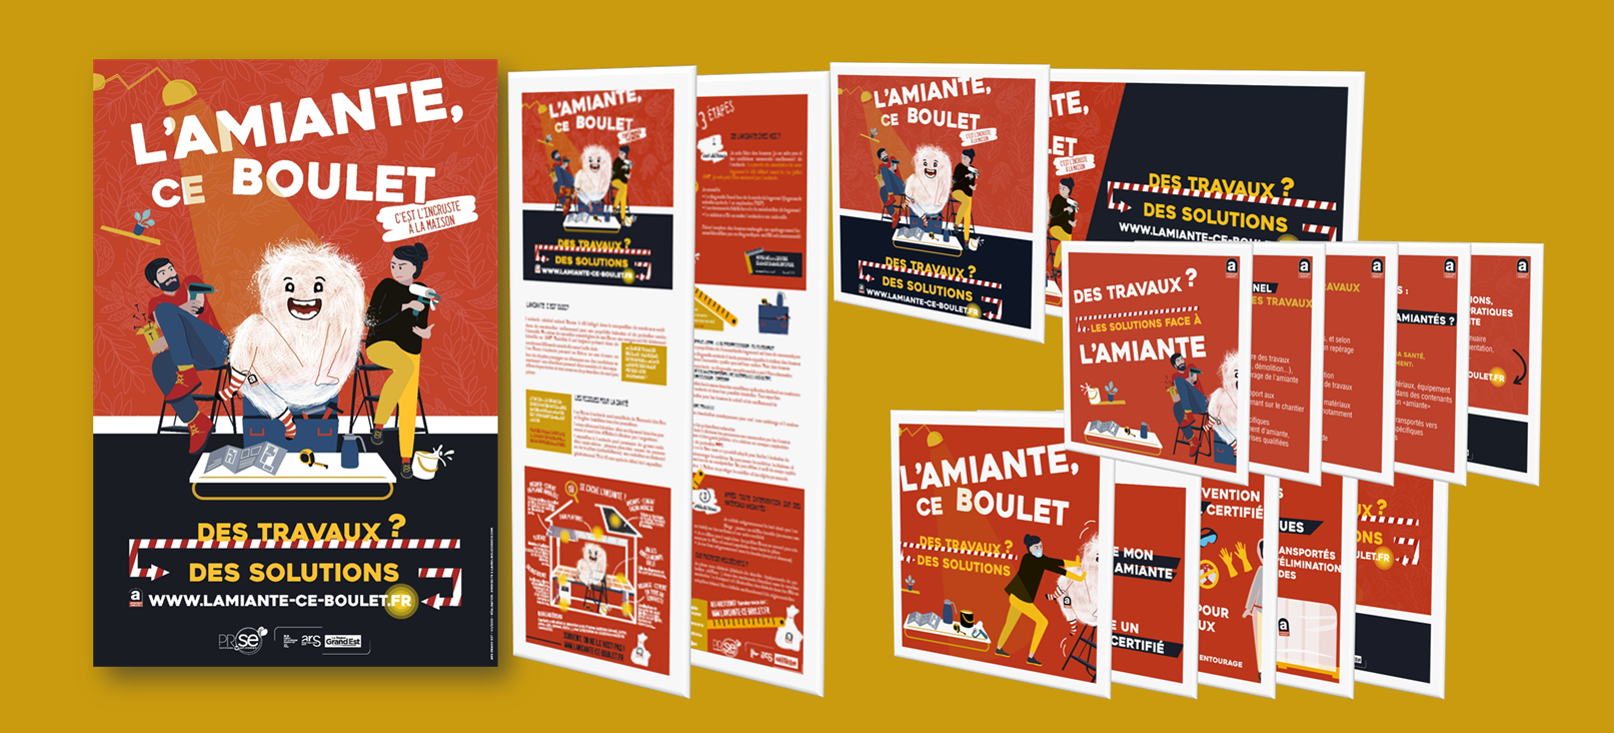 Supports L'Amiante ce boulet (affiche, flyer, bannières et carousels réseaux sociaux)